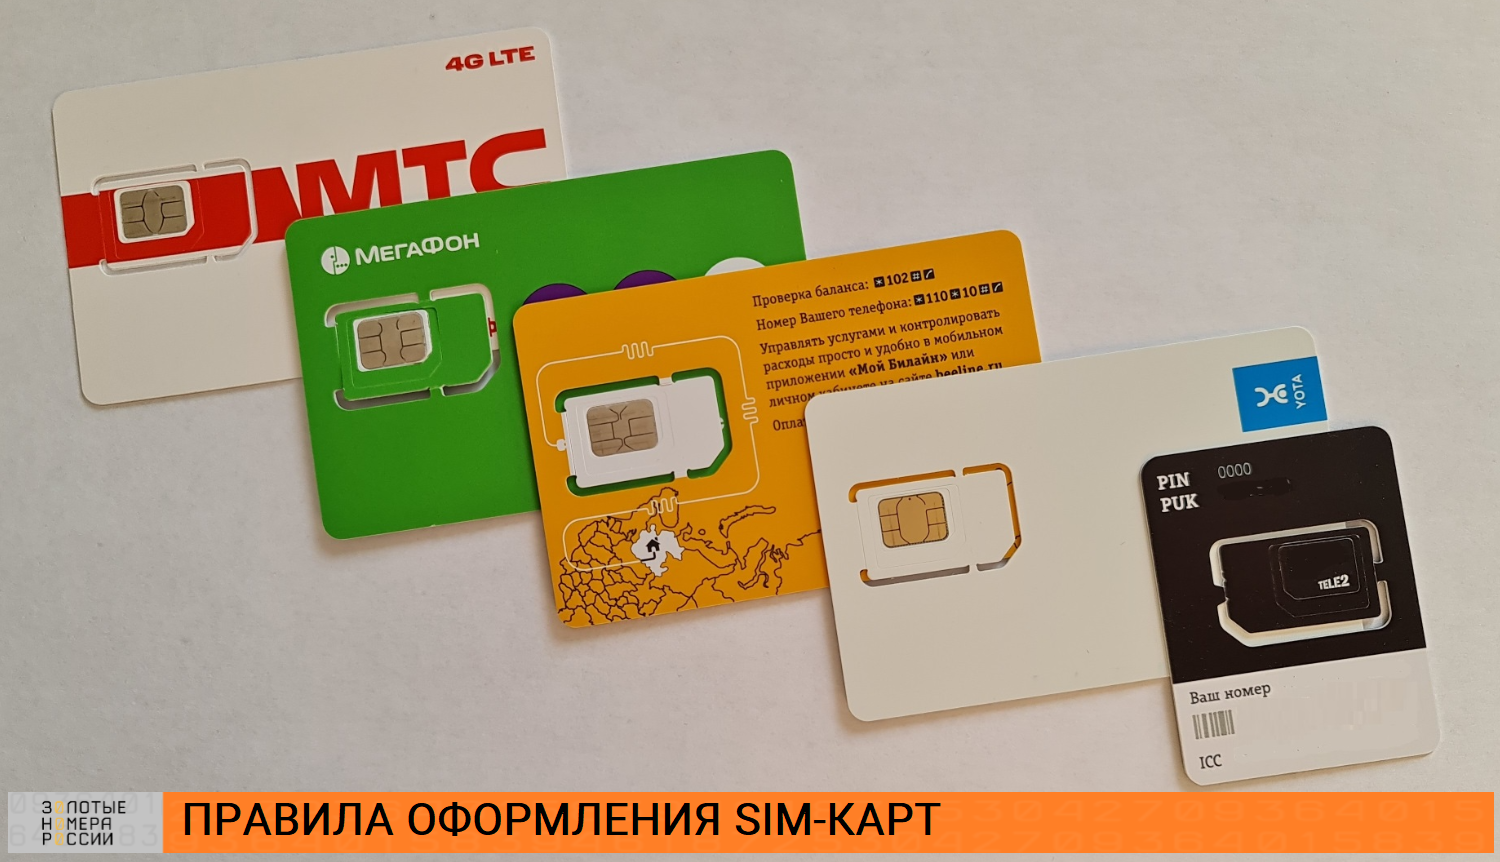 Правила оформления SIM-карт на абонента